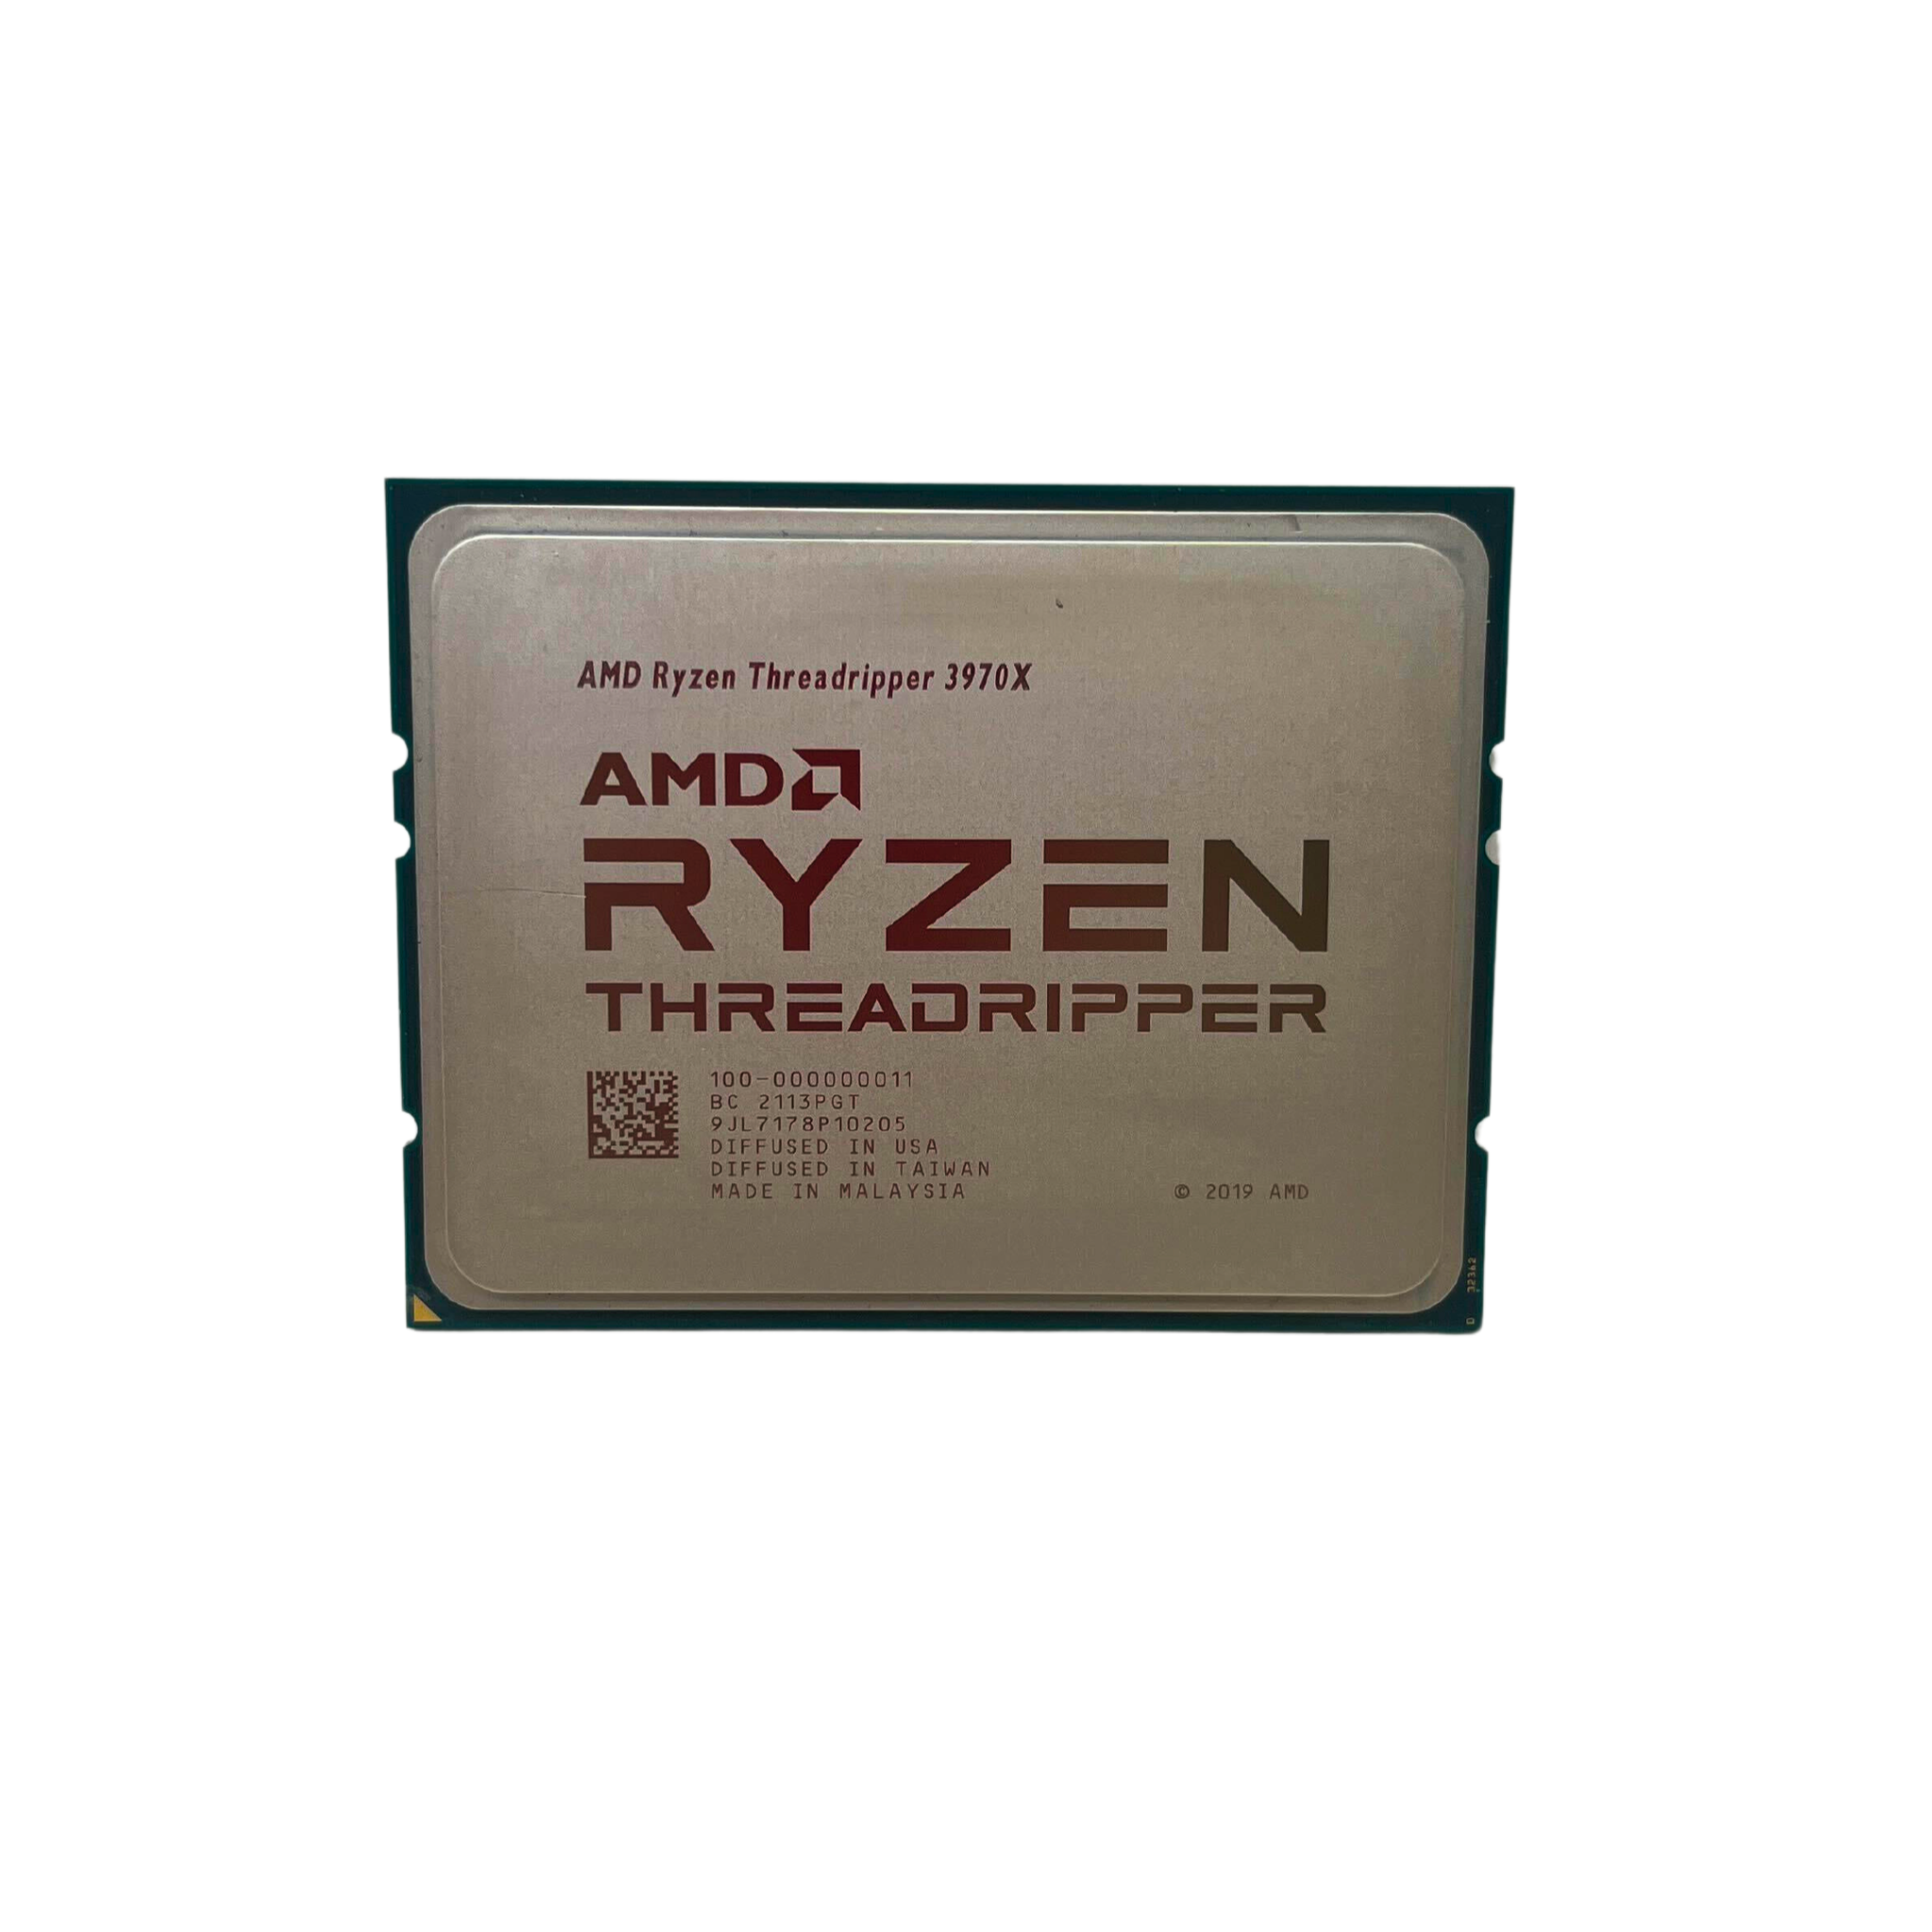 AMD Ryzen Threadripper 3970X Processor Up to 4.5/3.7 GHz 32 Cores (RYZEN THREADRIPPER 3970X)